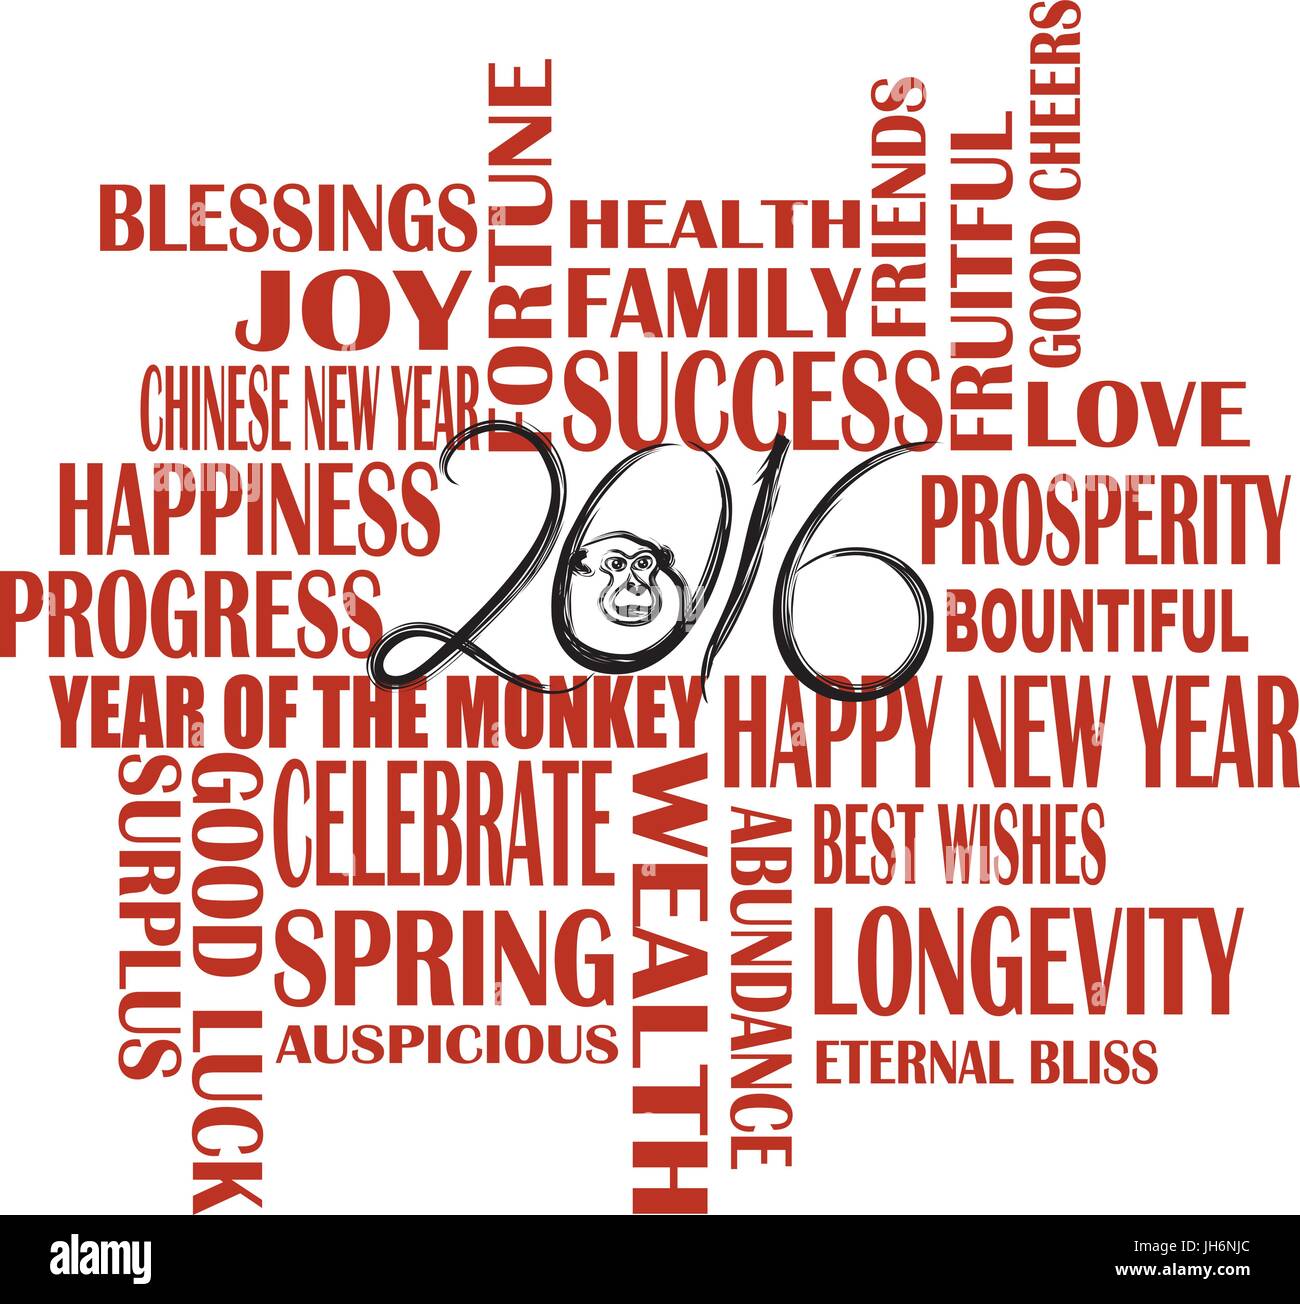 2016 Chinese Lunar New Year Englisch Grüße Text wünschen Gesundheit Glück Wohlstand Glück im Jahr des Affen auf Tinte Bürste auf weiß Ba Stock Vektor